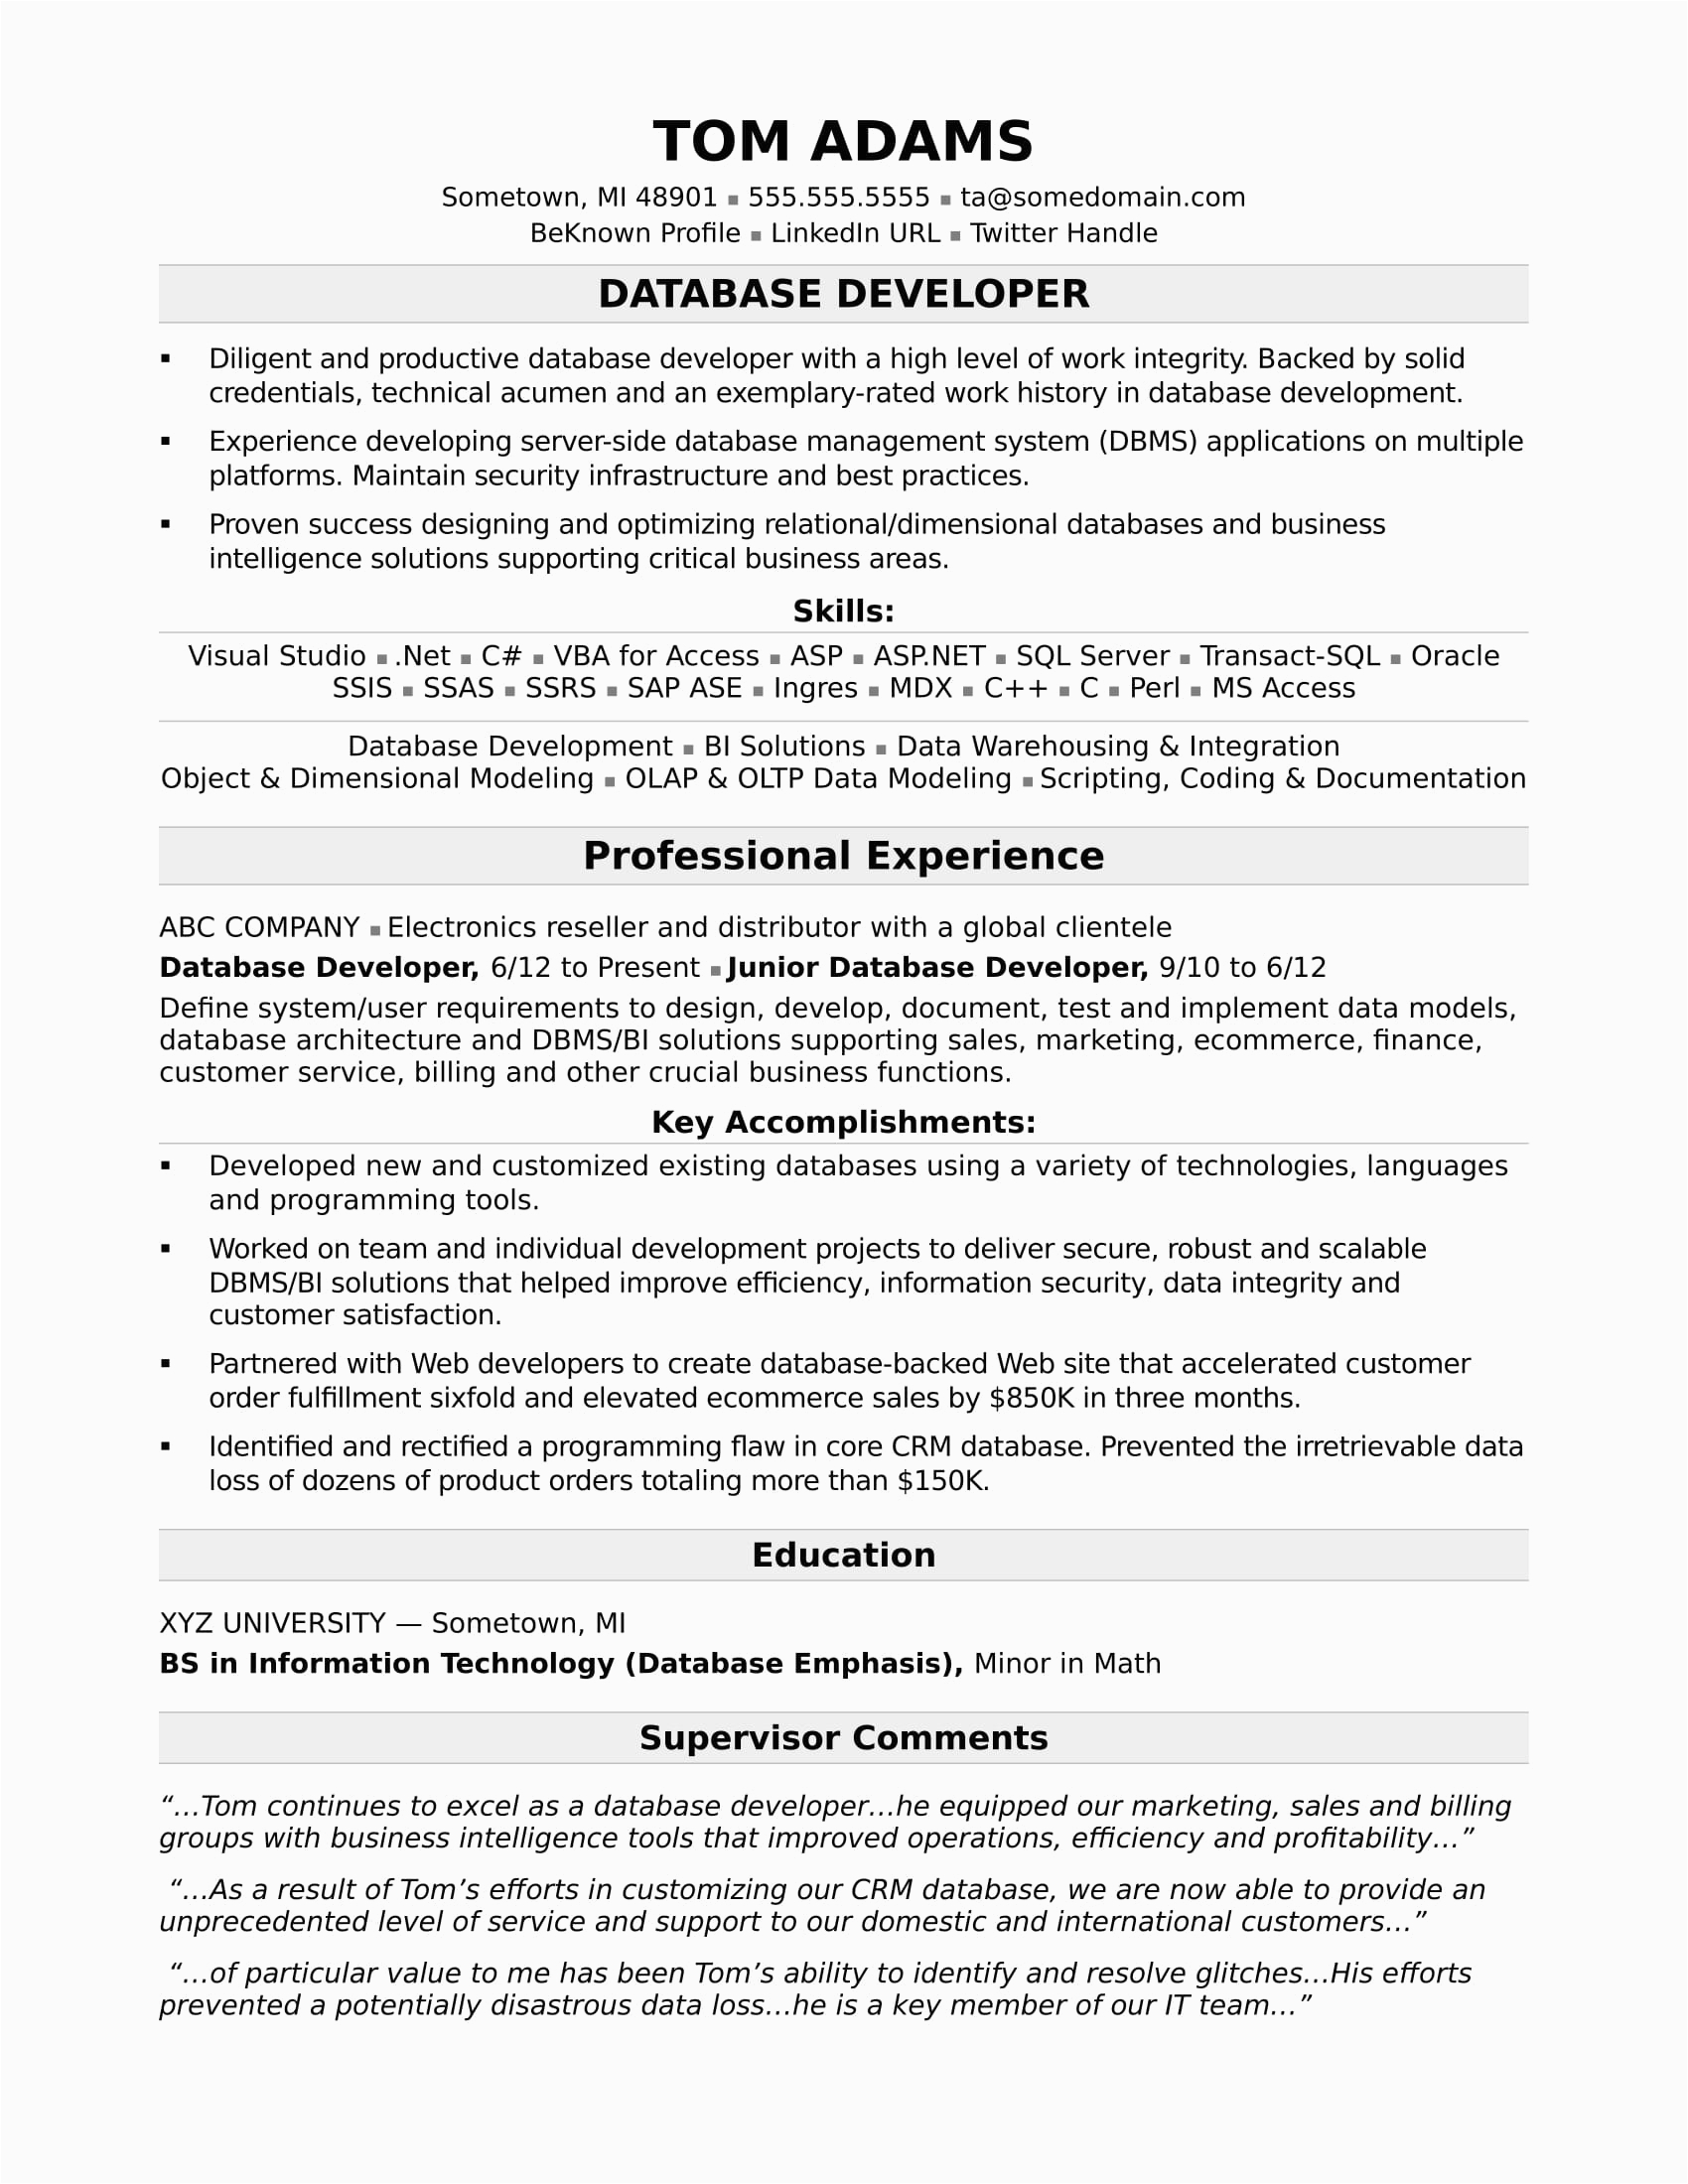 Database Developer Resume Sample Entry Level Sample Resume for A Midlevel It Developer